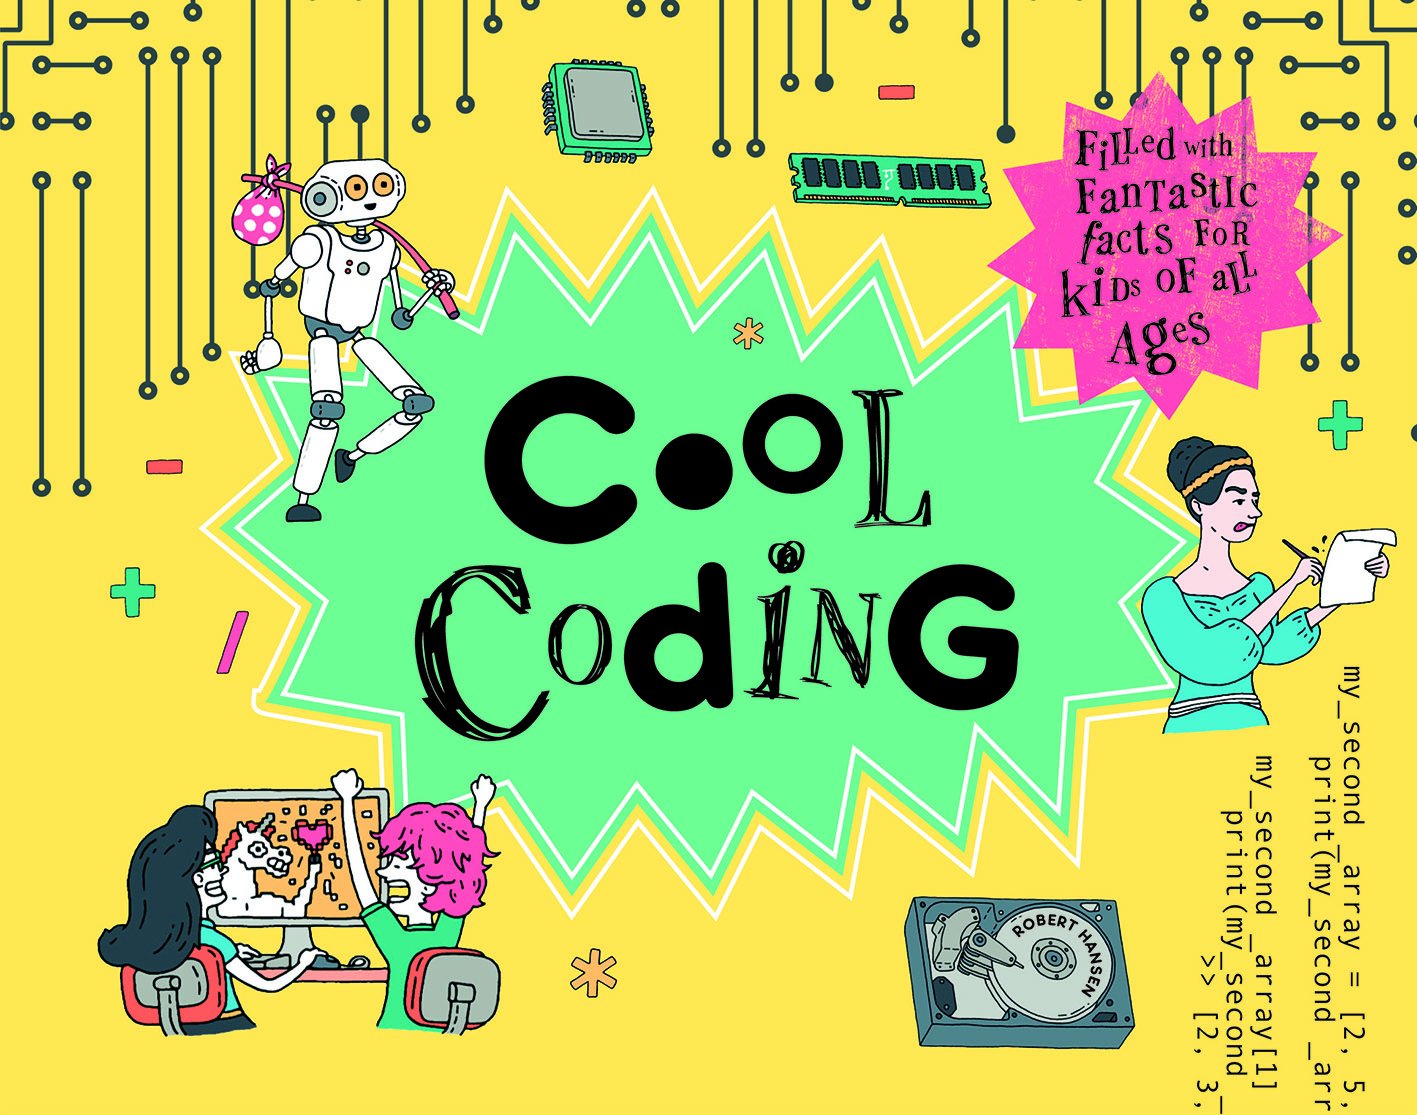 Cool Coding